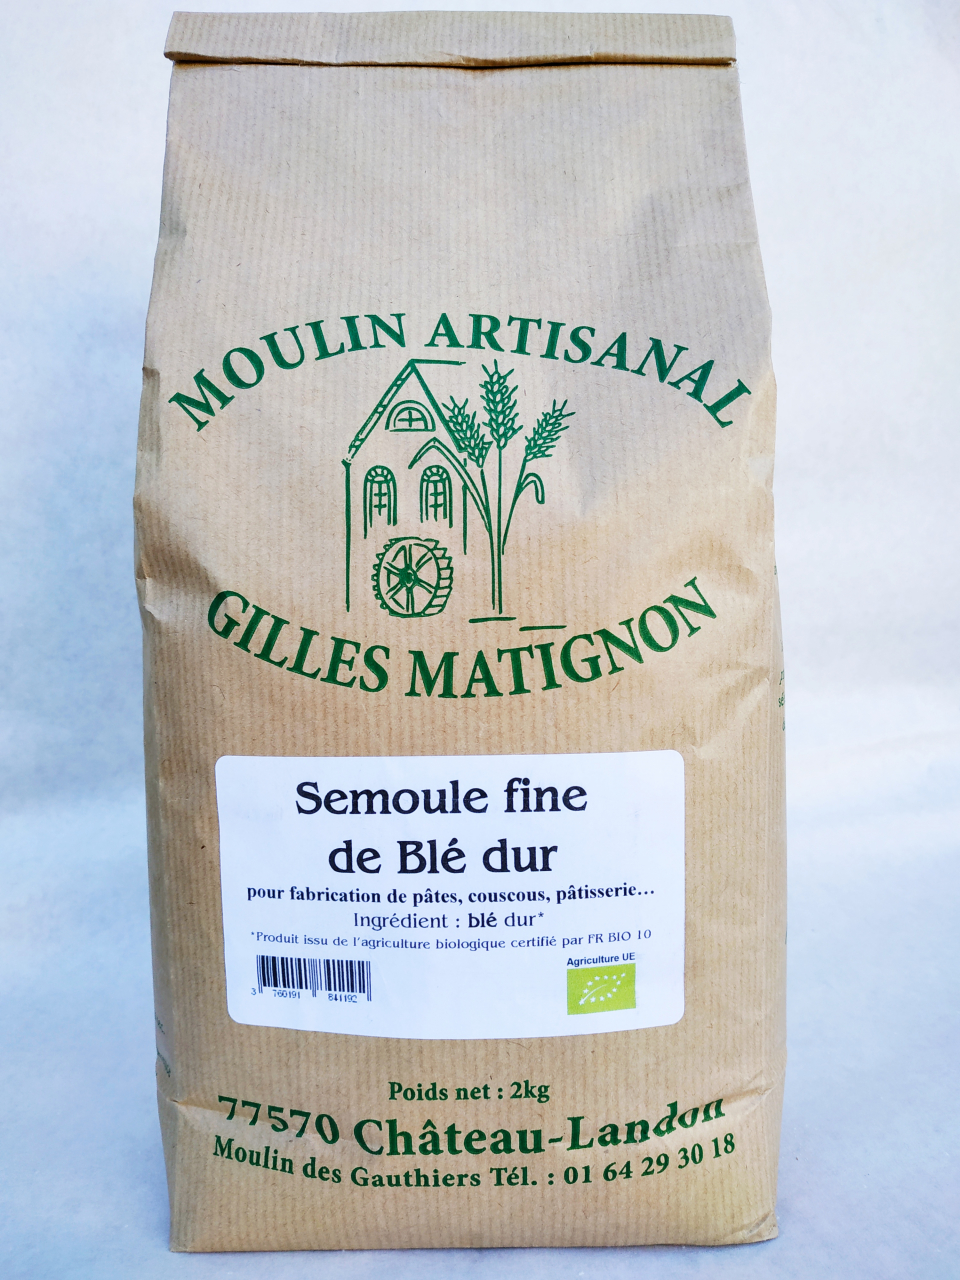 1Kg de semoule de blé dur qualité supérieure - Pâtes artisanales des Alpes